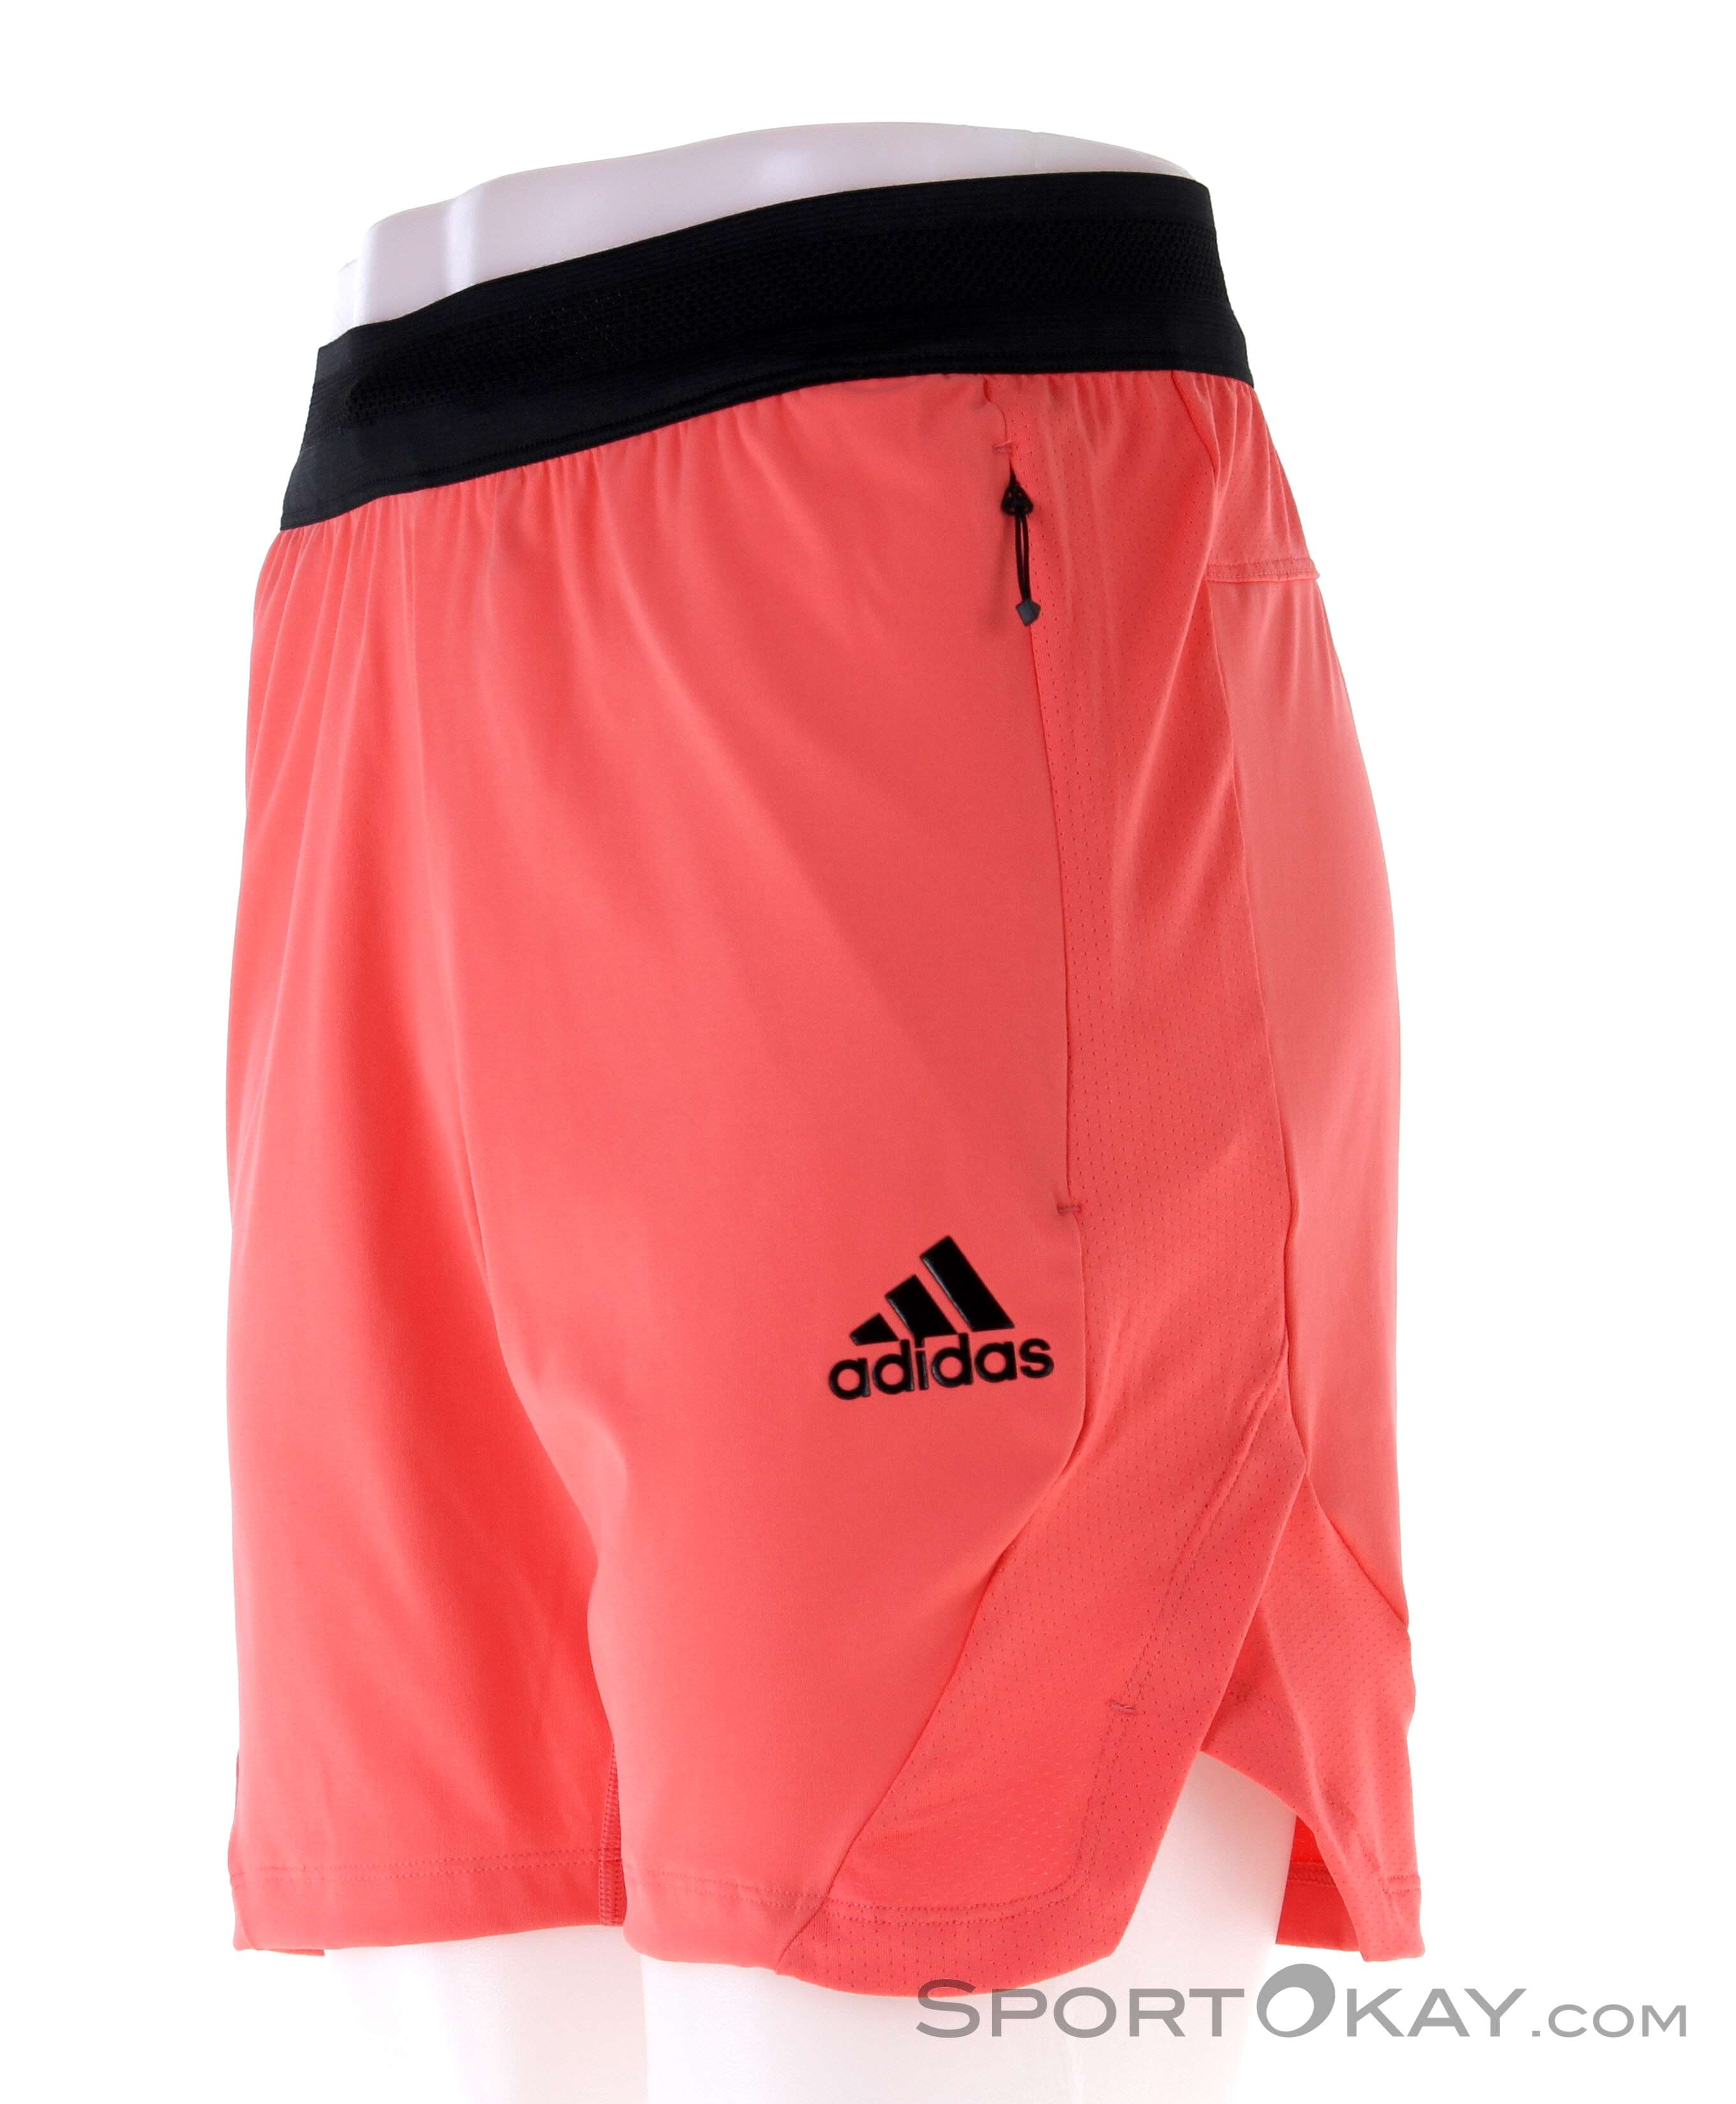 adidas pink shorts mens